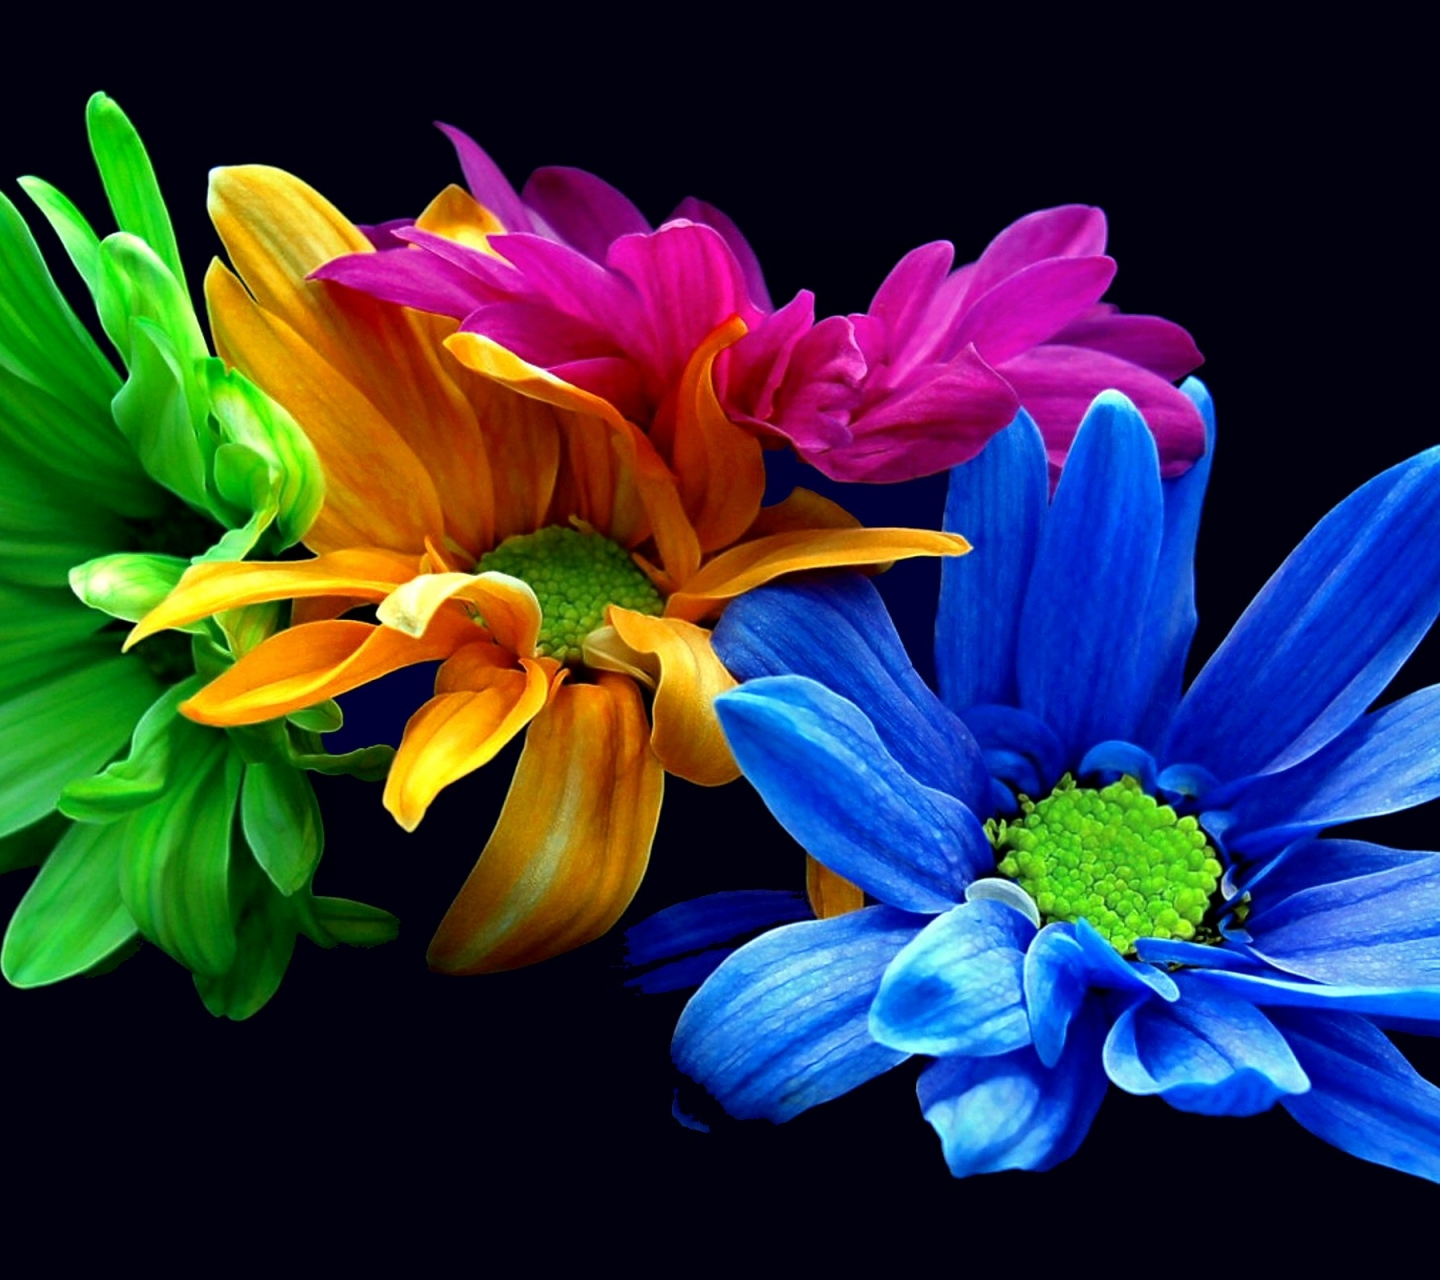 Free download wallpaper Flowers, Flower, Earth, Colorful, Petal, Yellow Flower, Purple Flower, Blue Flower on your PC desktop